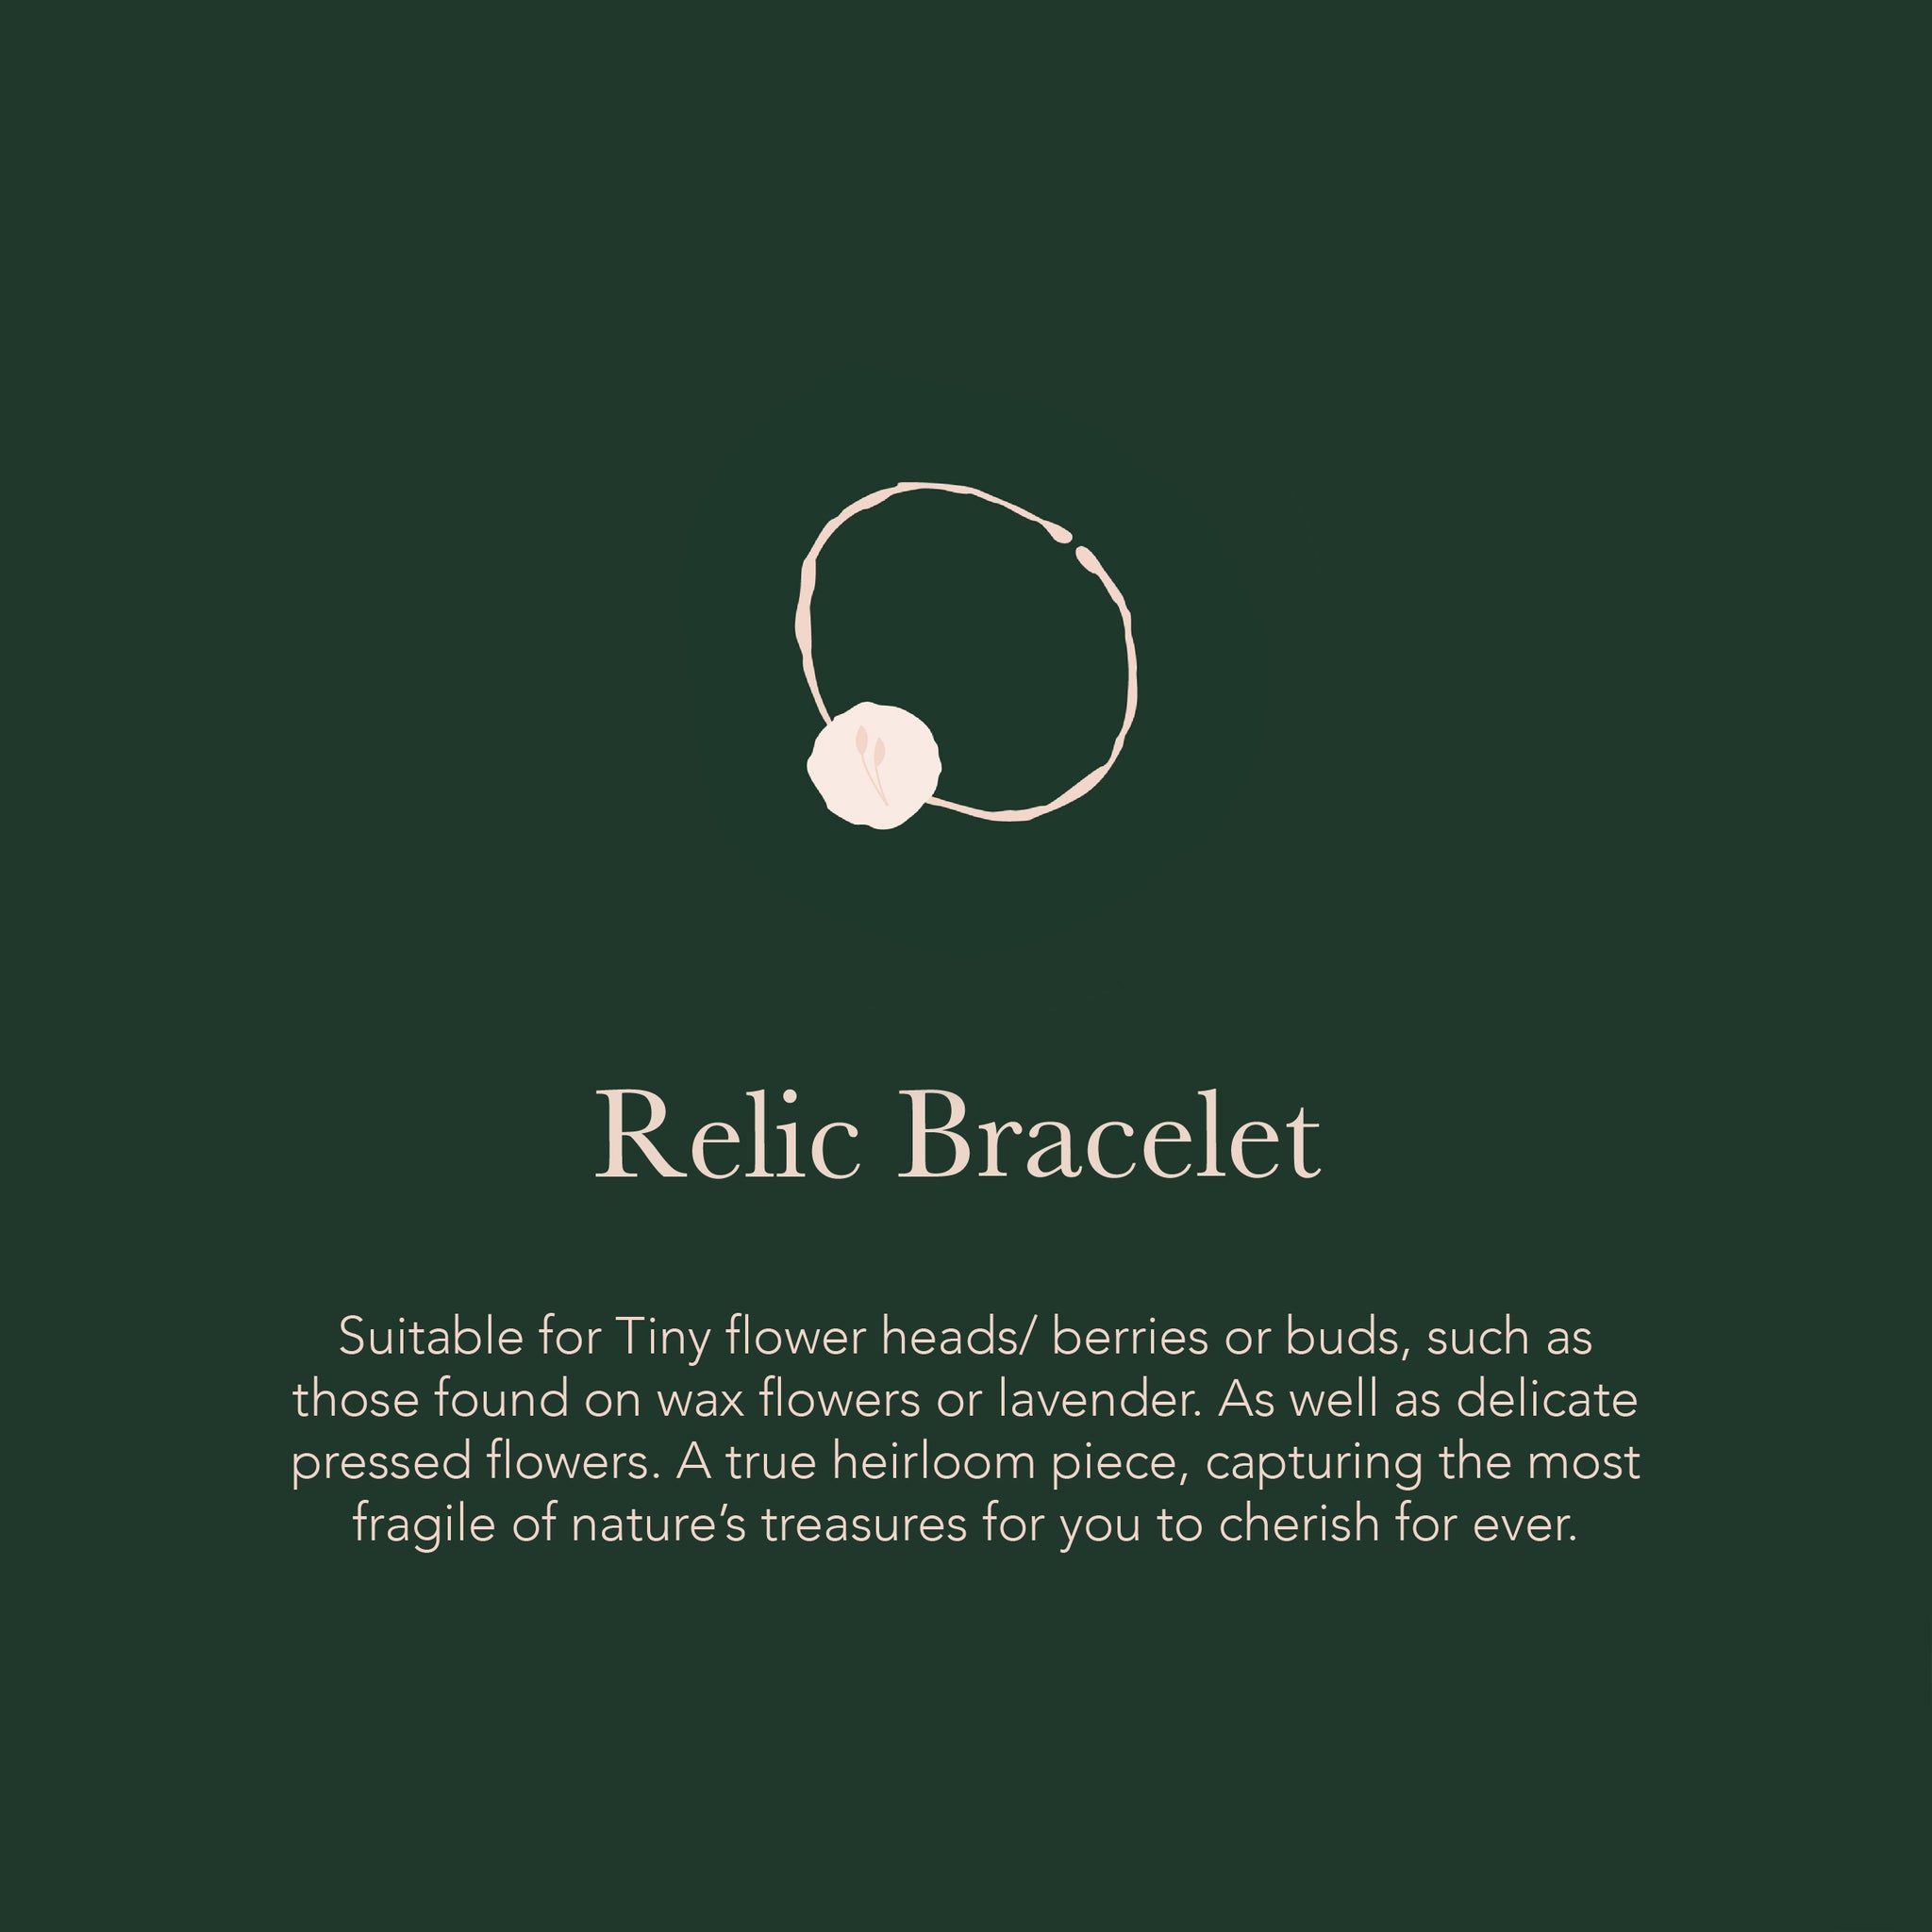 Relic Bracelet - Create